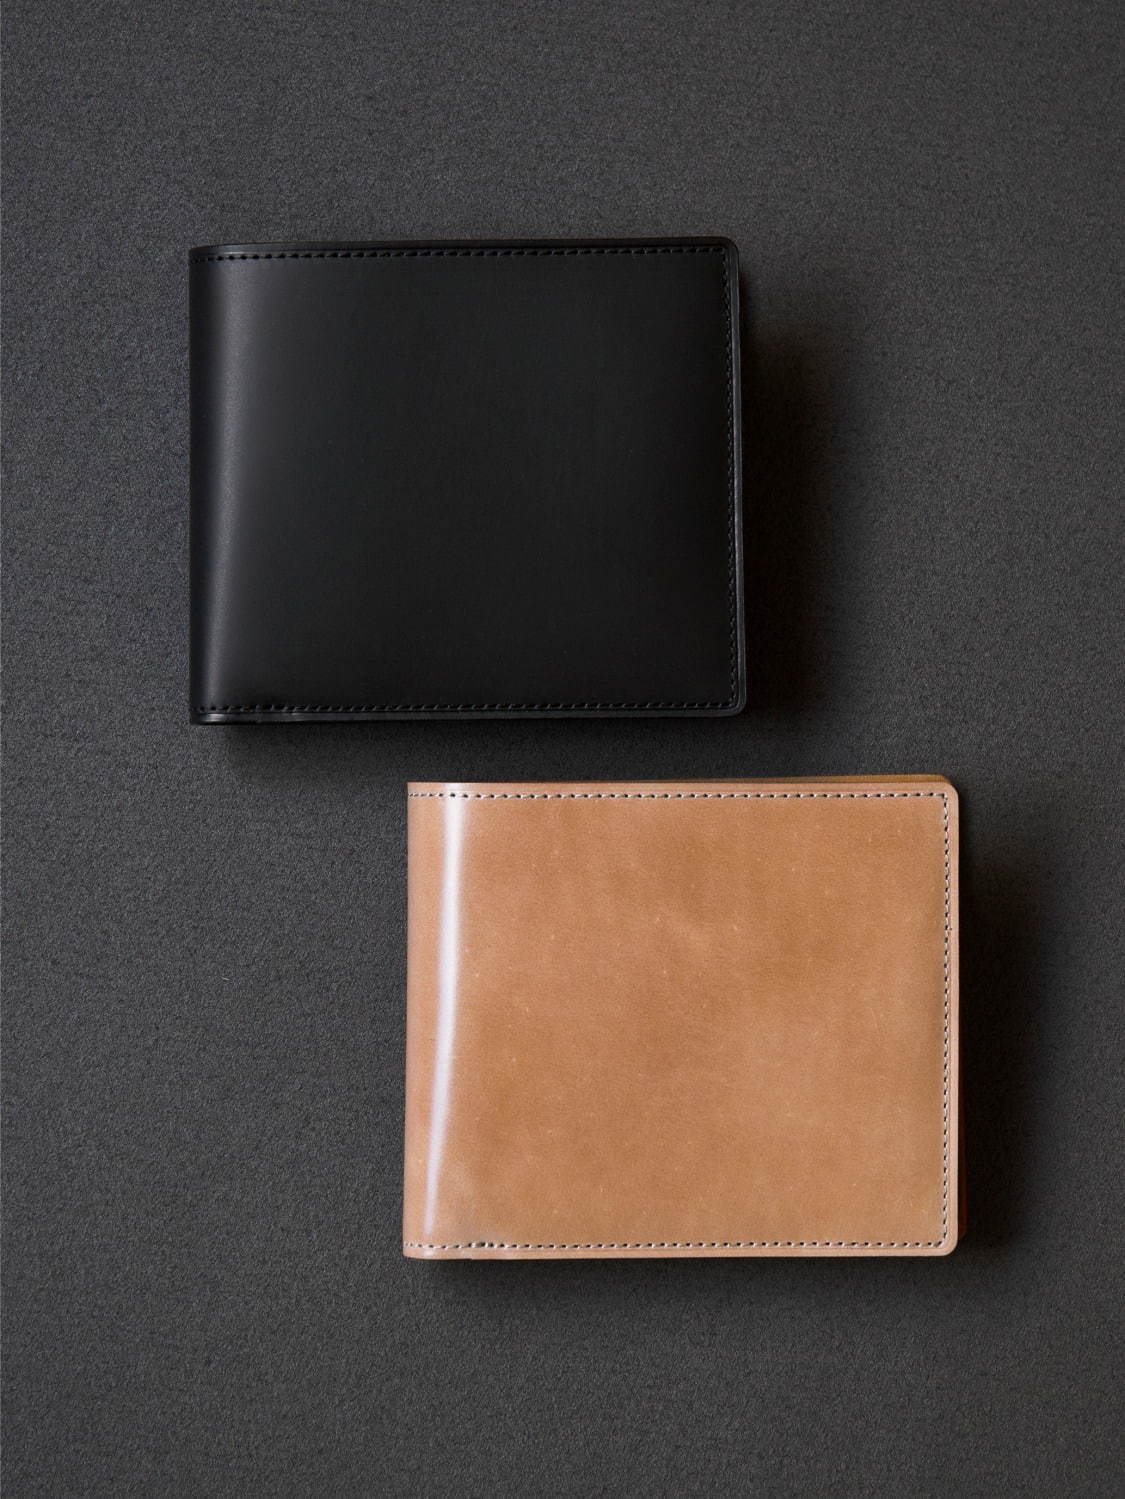 スペシャルコードバン 二折財布(H9.7×W11.6×D2.3cm) 45,000円＋税